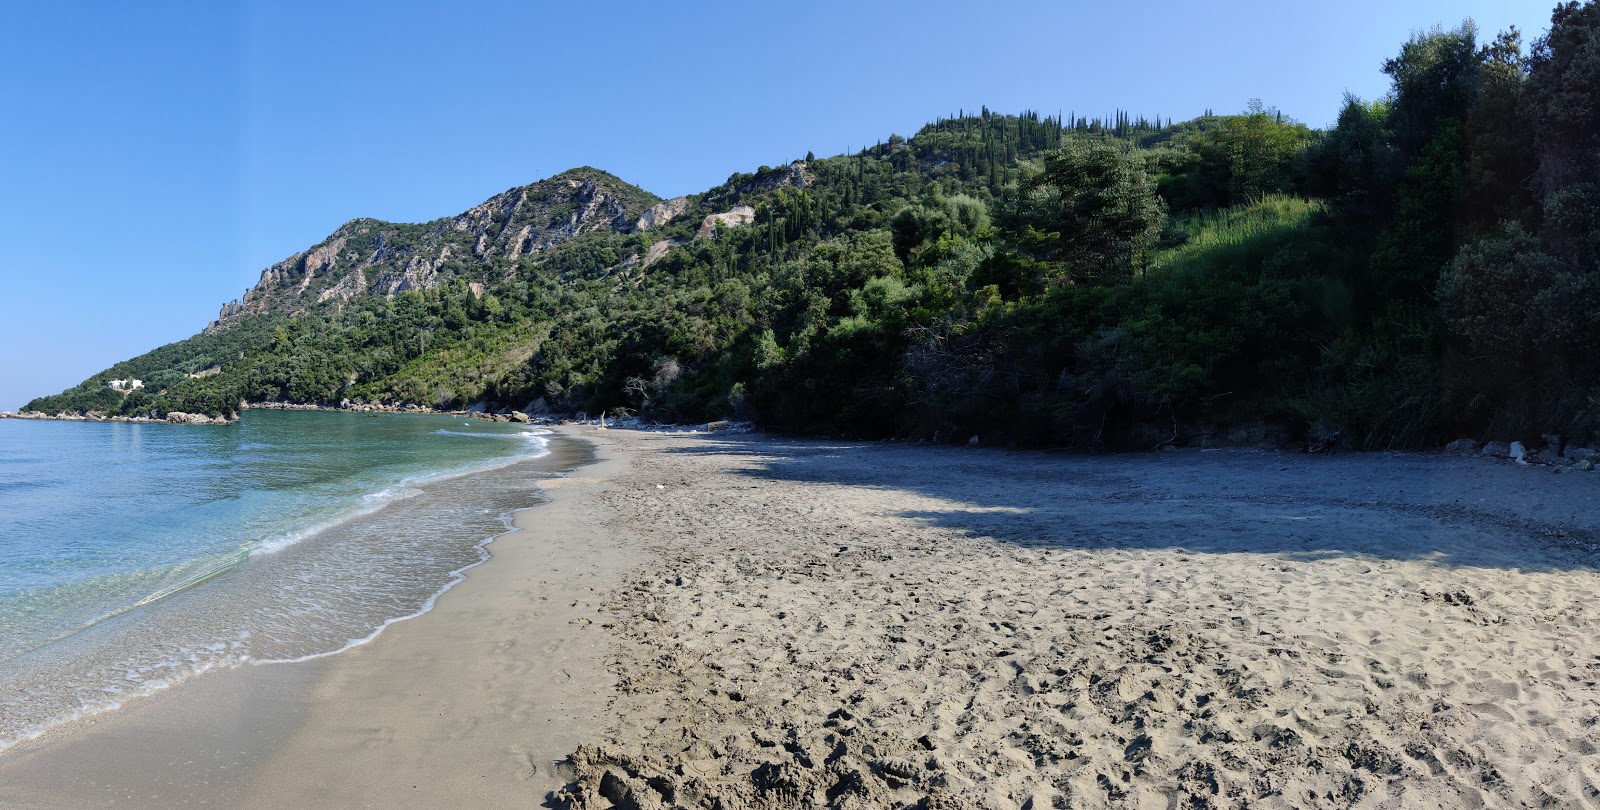 Photo de Arilla beach - endroit populaire parmi les connaisseurs de la détente